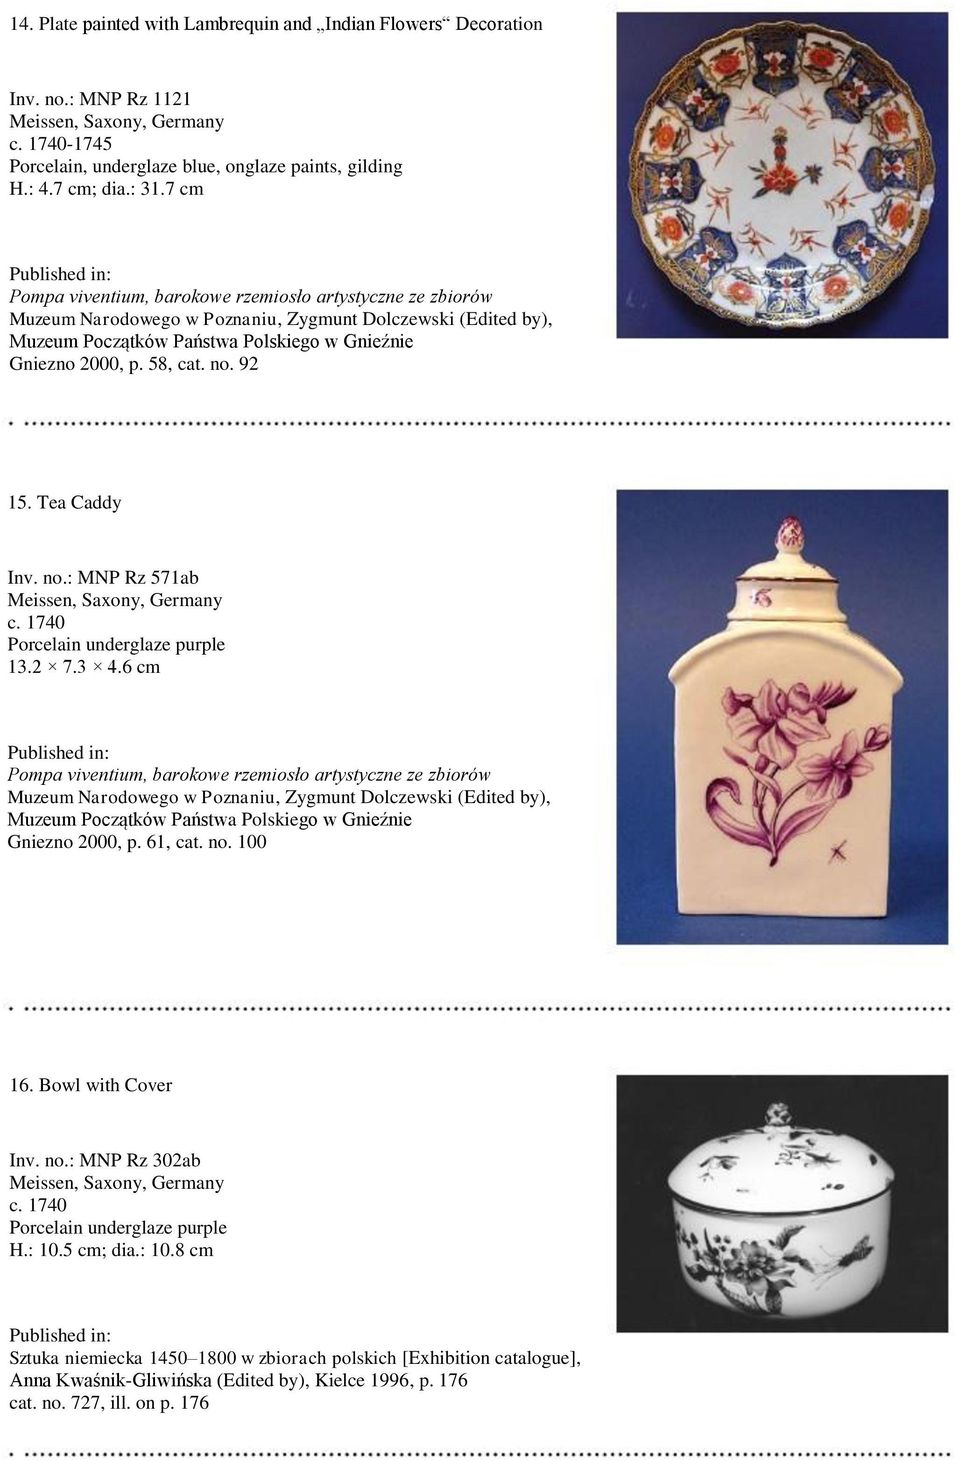 1740 Porcelain underglaze purple 13.2 7.3 4.6 cm Gniezno 2000, p. 61, cat. no. 100 16. Bowl with Cover Inv. no.: MNP Rz 302ab c.